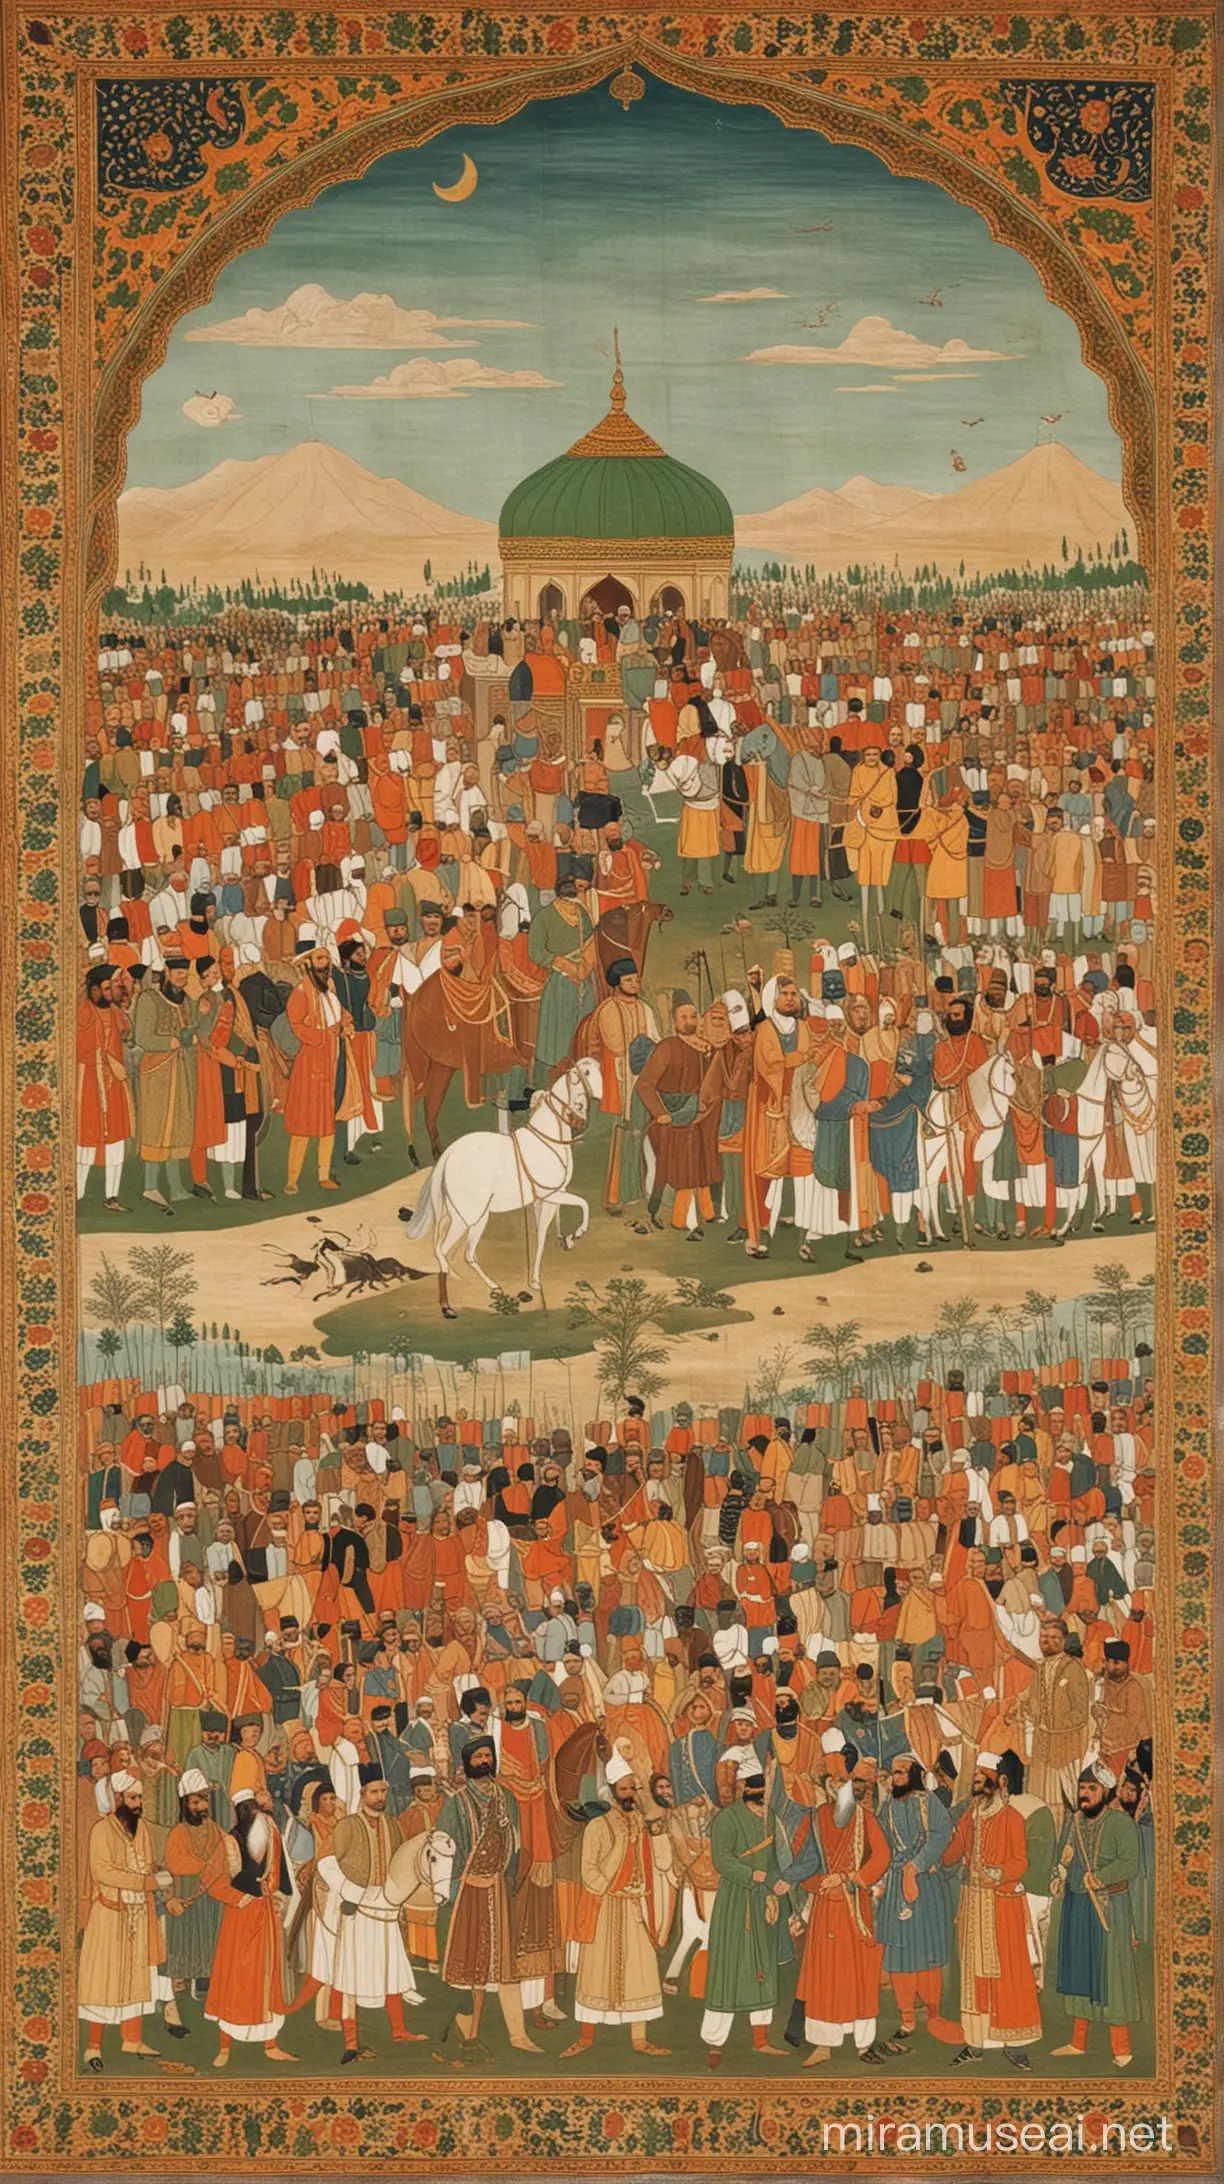 Babur Dynasty 1857 Majestic Royal Court of Mughal Emperor Babur